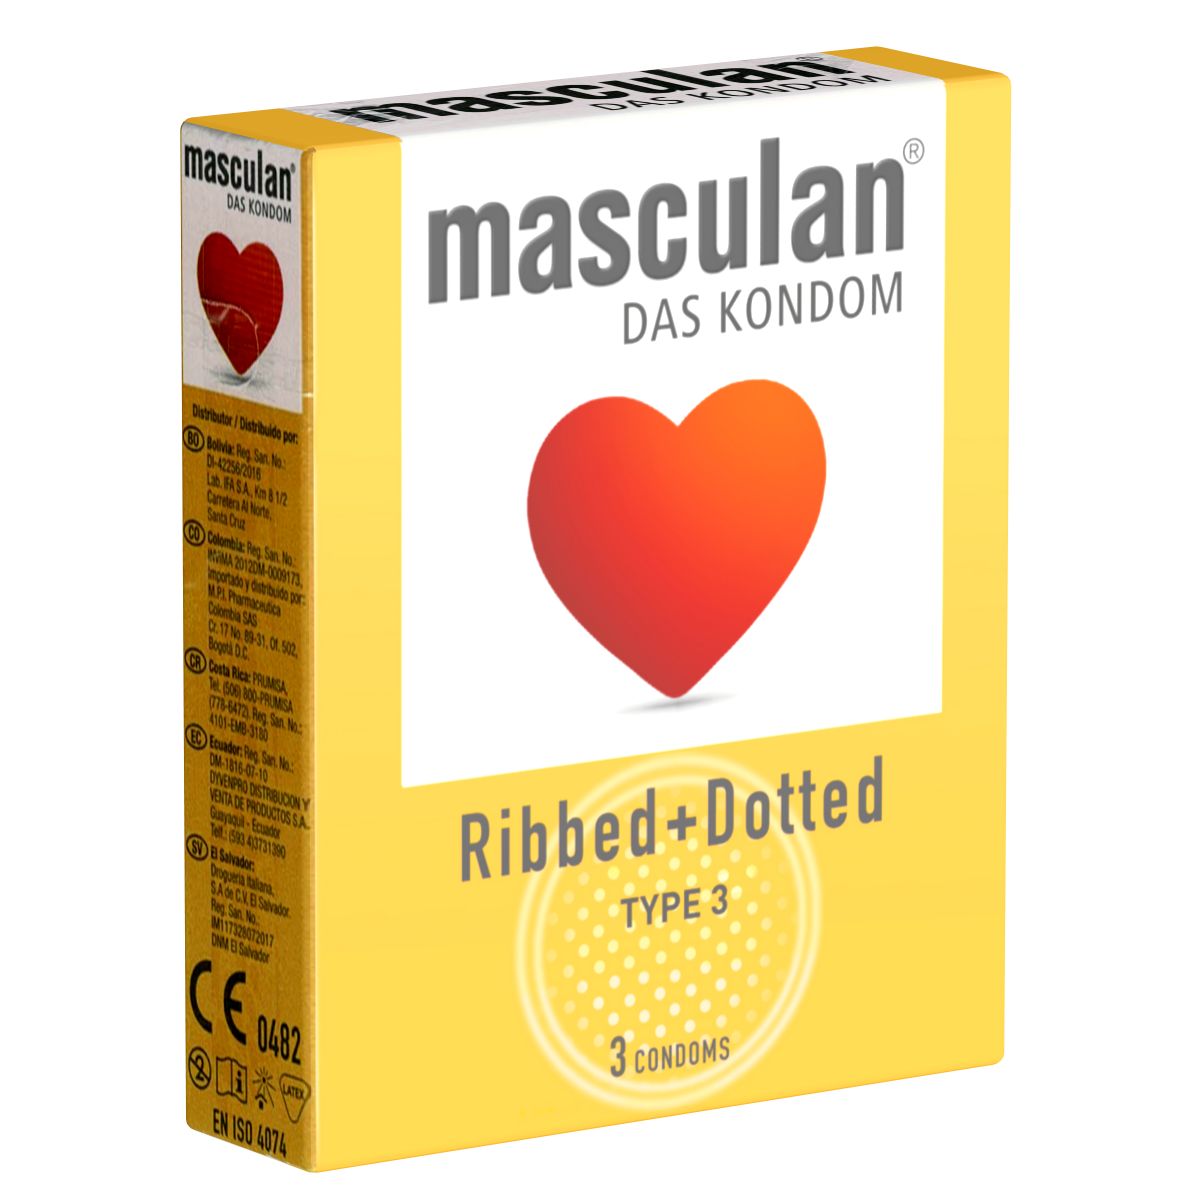 Masculan *Typ 3* (ribbed/dotted) gerippt-genoppte Kondome für mehr Gefühl